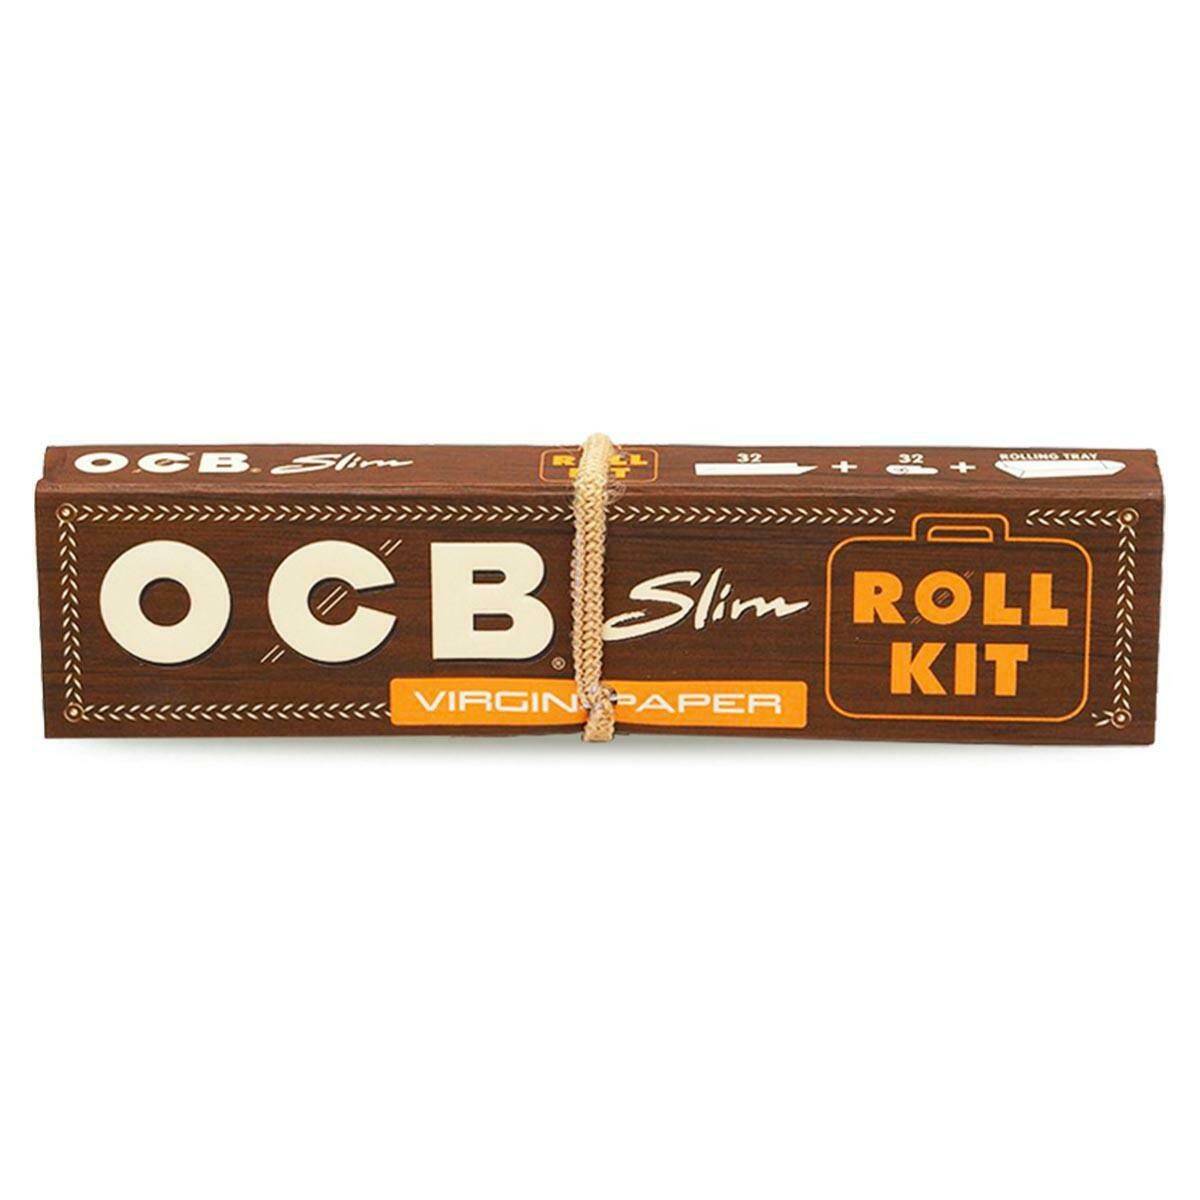 Bibułki OCB Virgin Slim + Fil (Roll Kit)